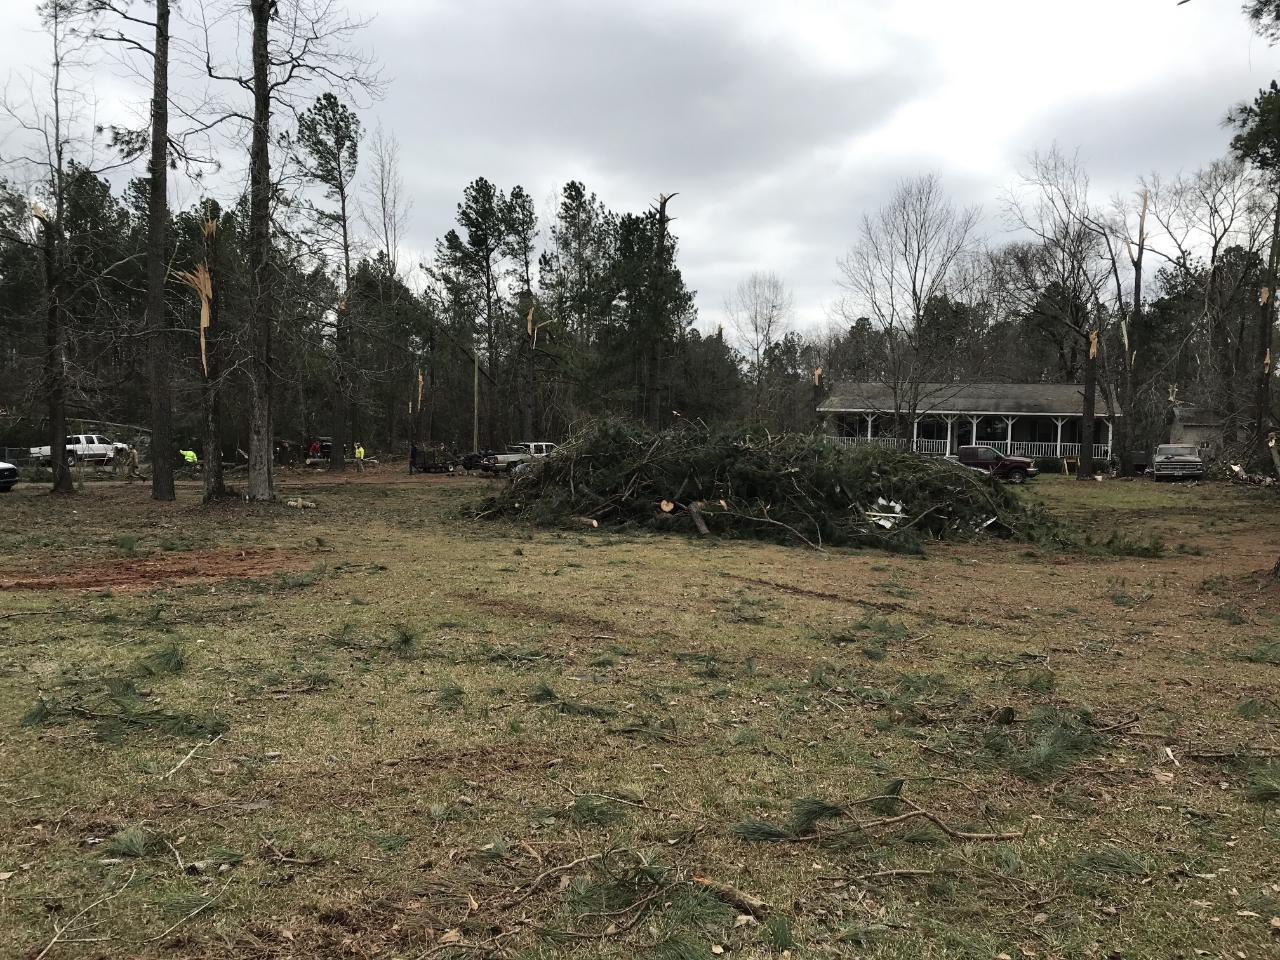 Edgefield County Tornado March 3rd, 20191280 x 960